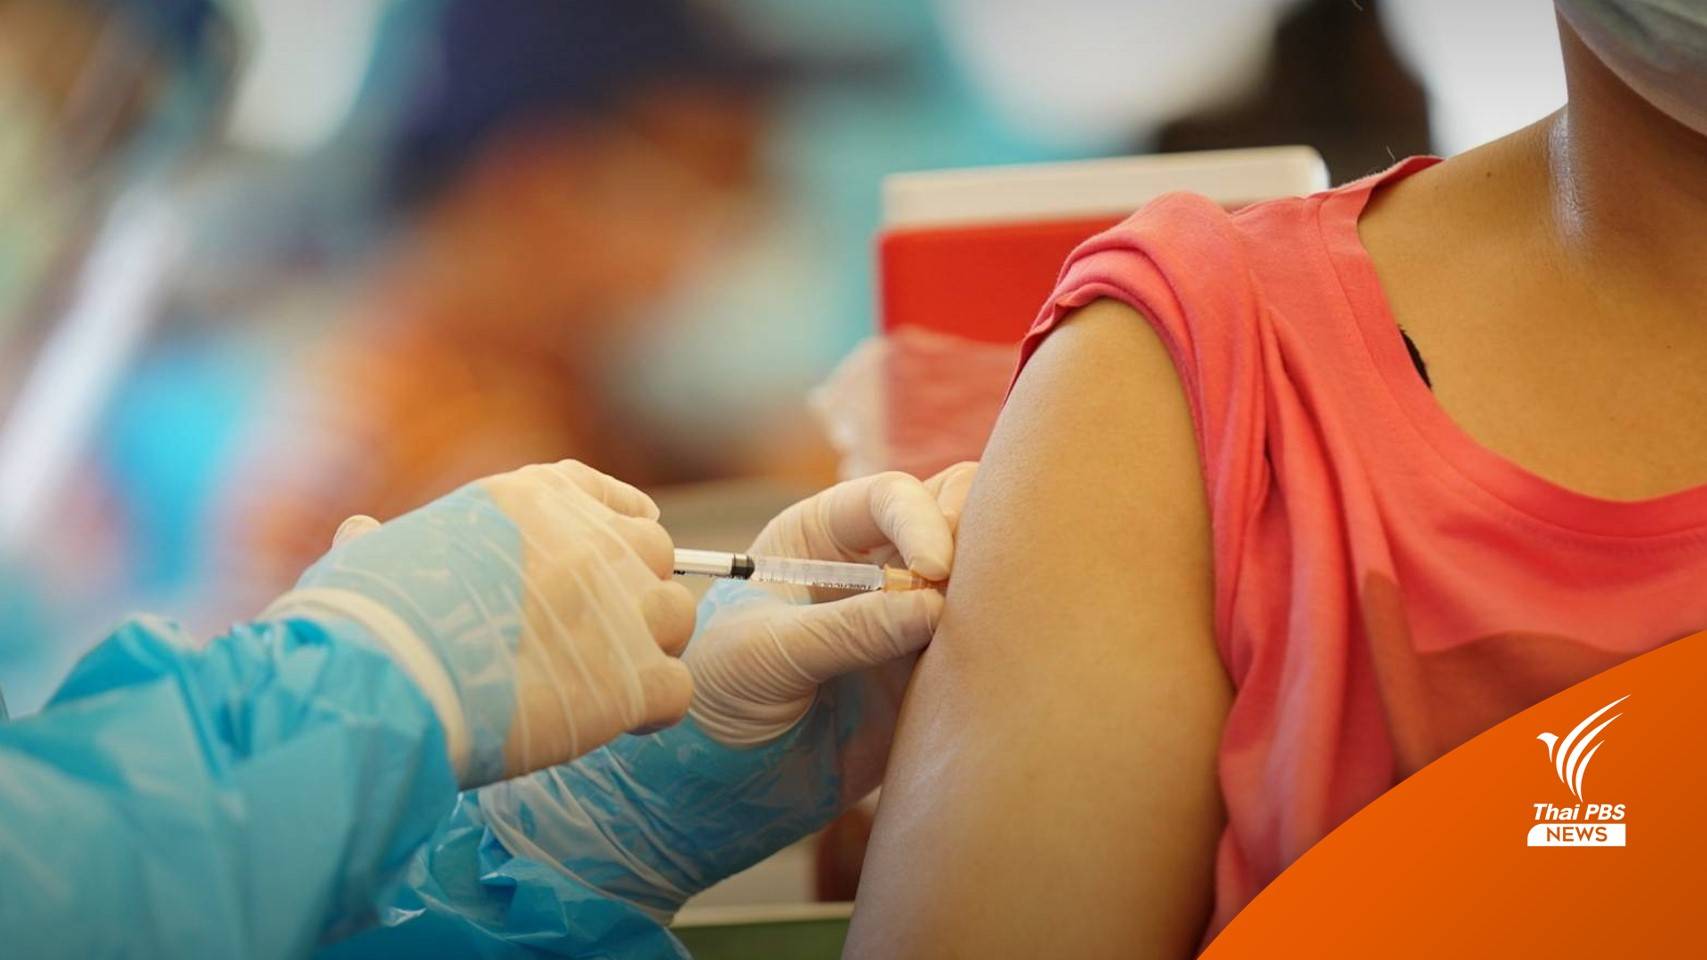 "อนุทิน" เร่งฉีดวัคซีน 4 จว.ชายแดนใต้ - นครศรีฯ หลังระบาดหนัก